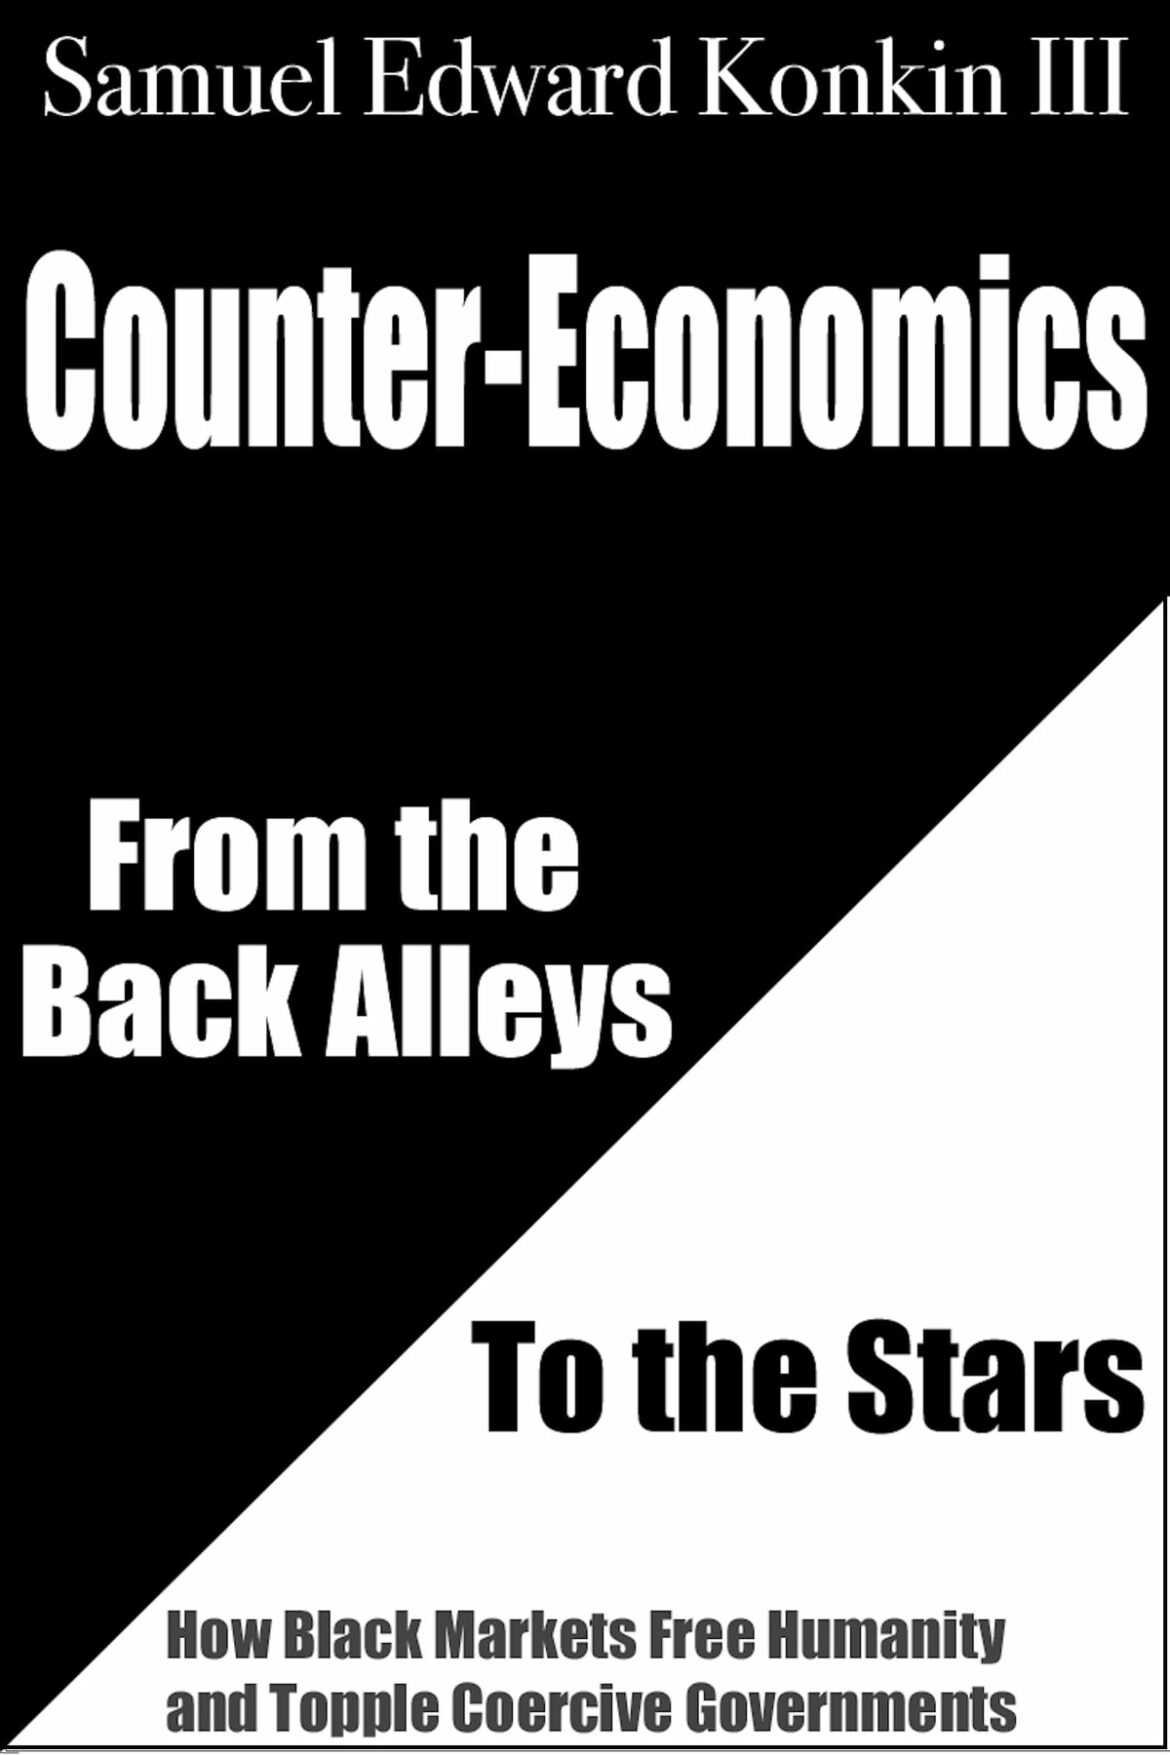 Countereconomics